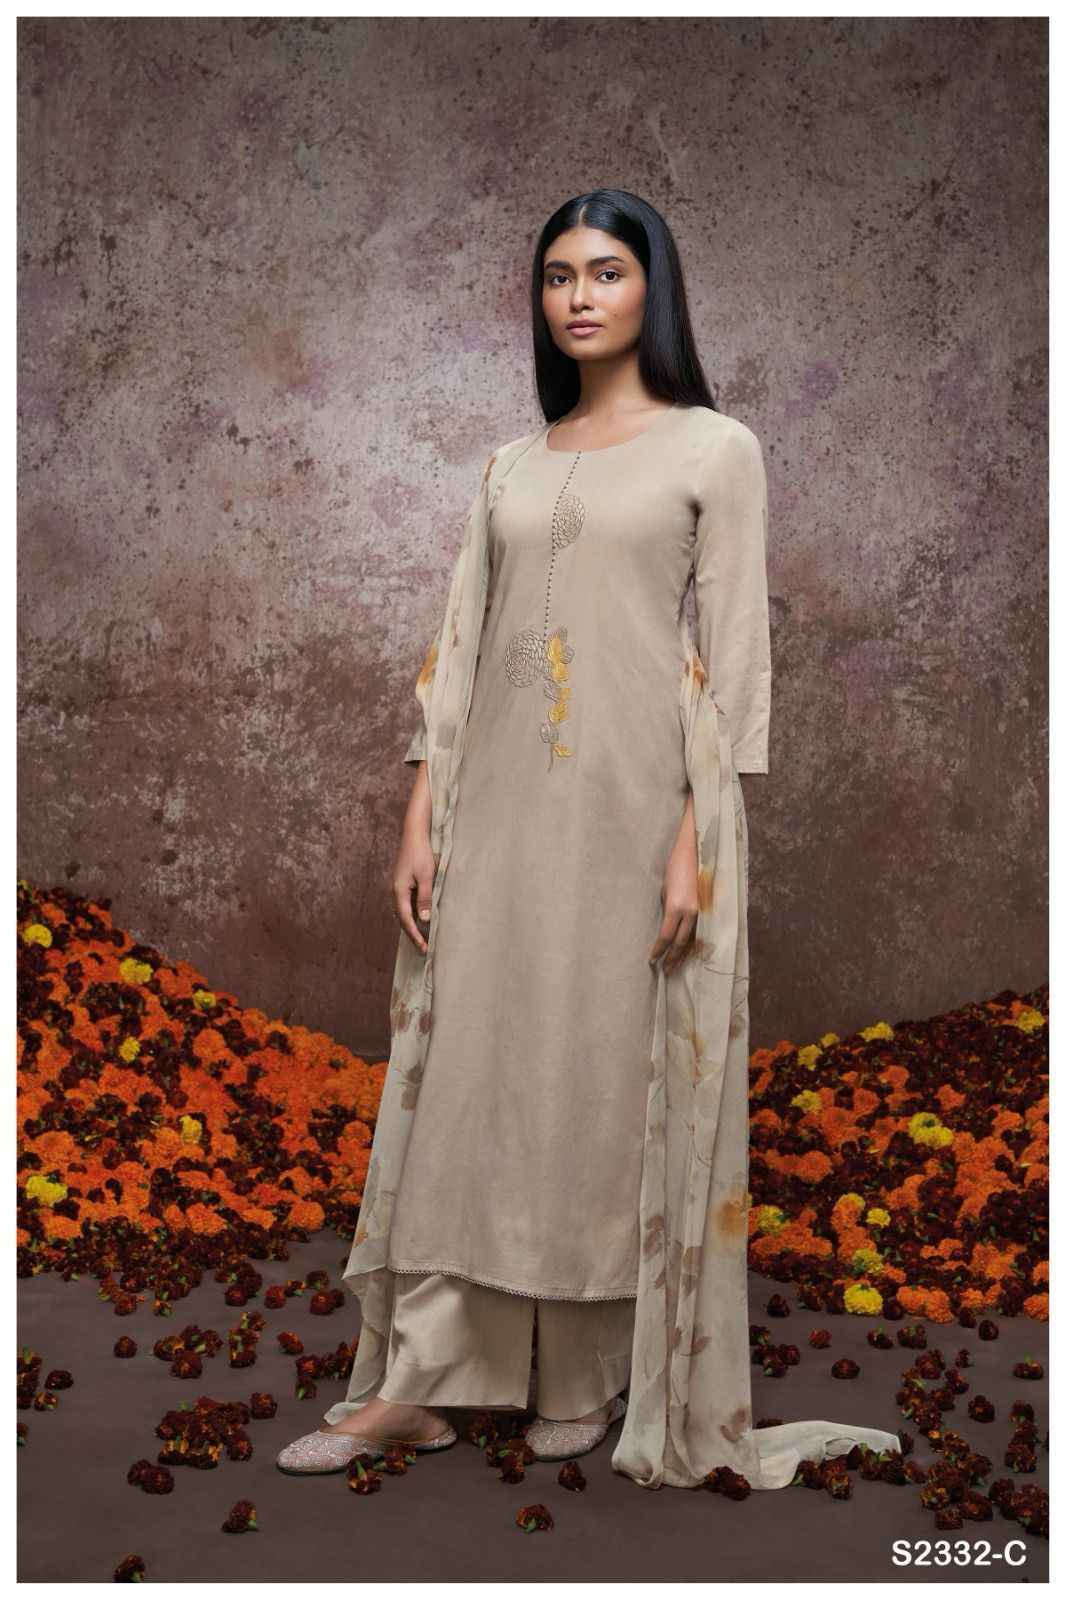 Ganga Valerie Premium Cotton Dress Material (4 Pc Catalog)